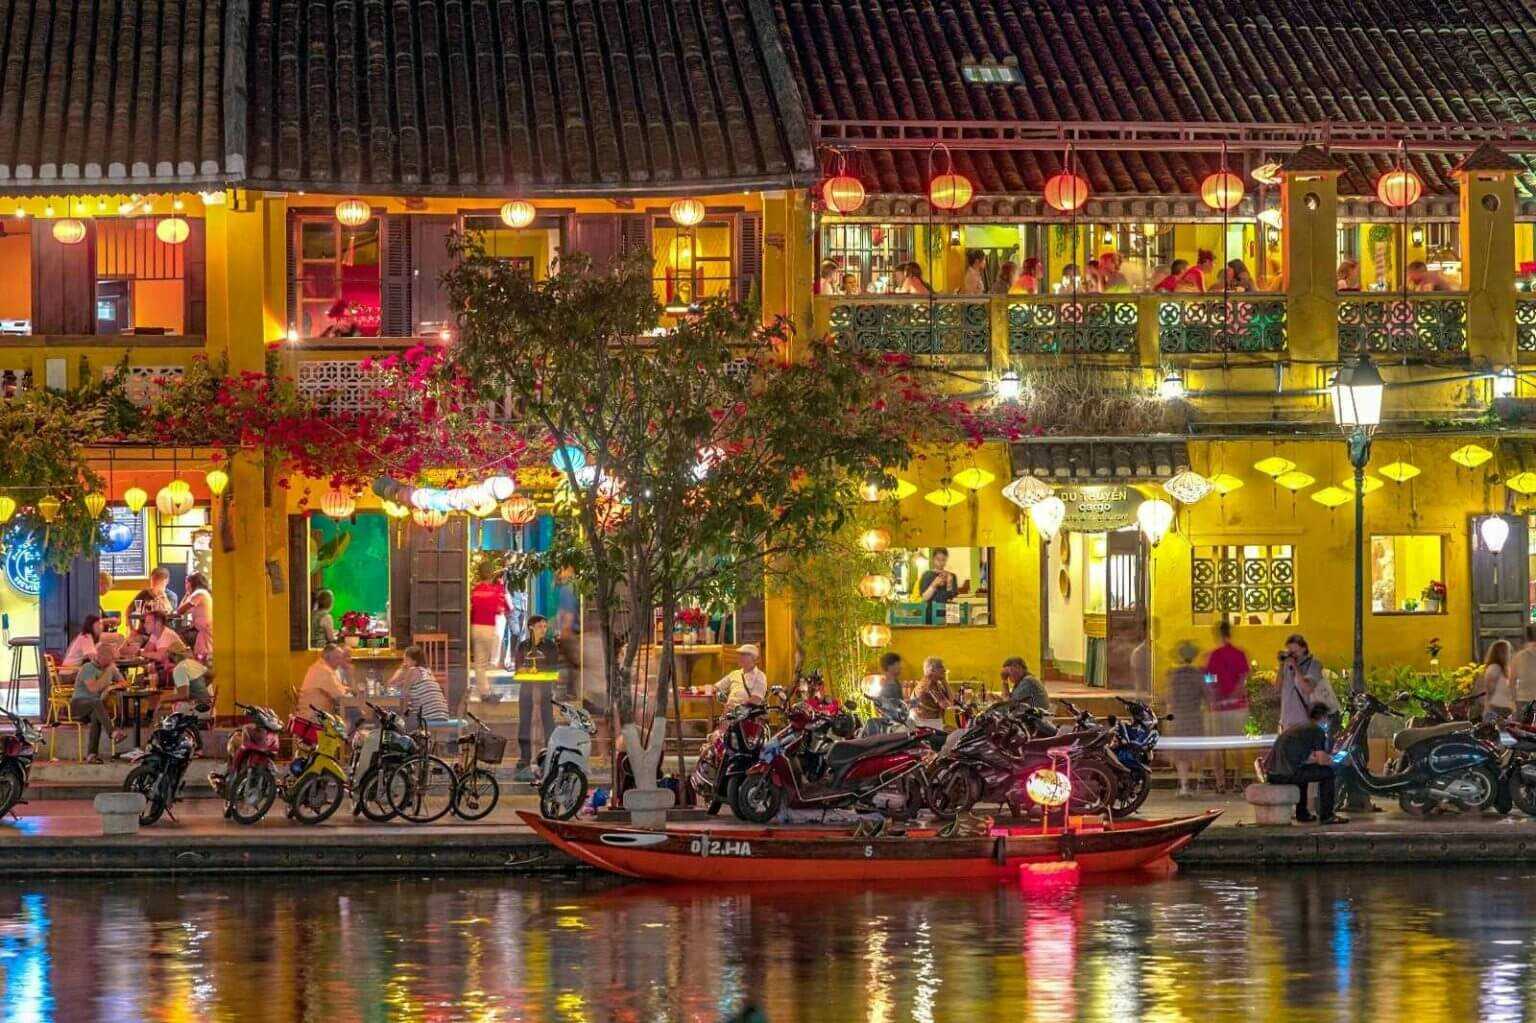 Du lịch Miền Trung - Hồ Truồi 4 ngày khuyến mãi Vietnam Airlines